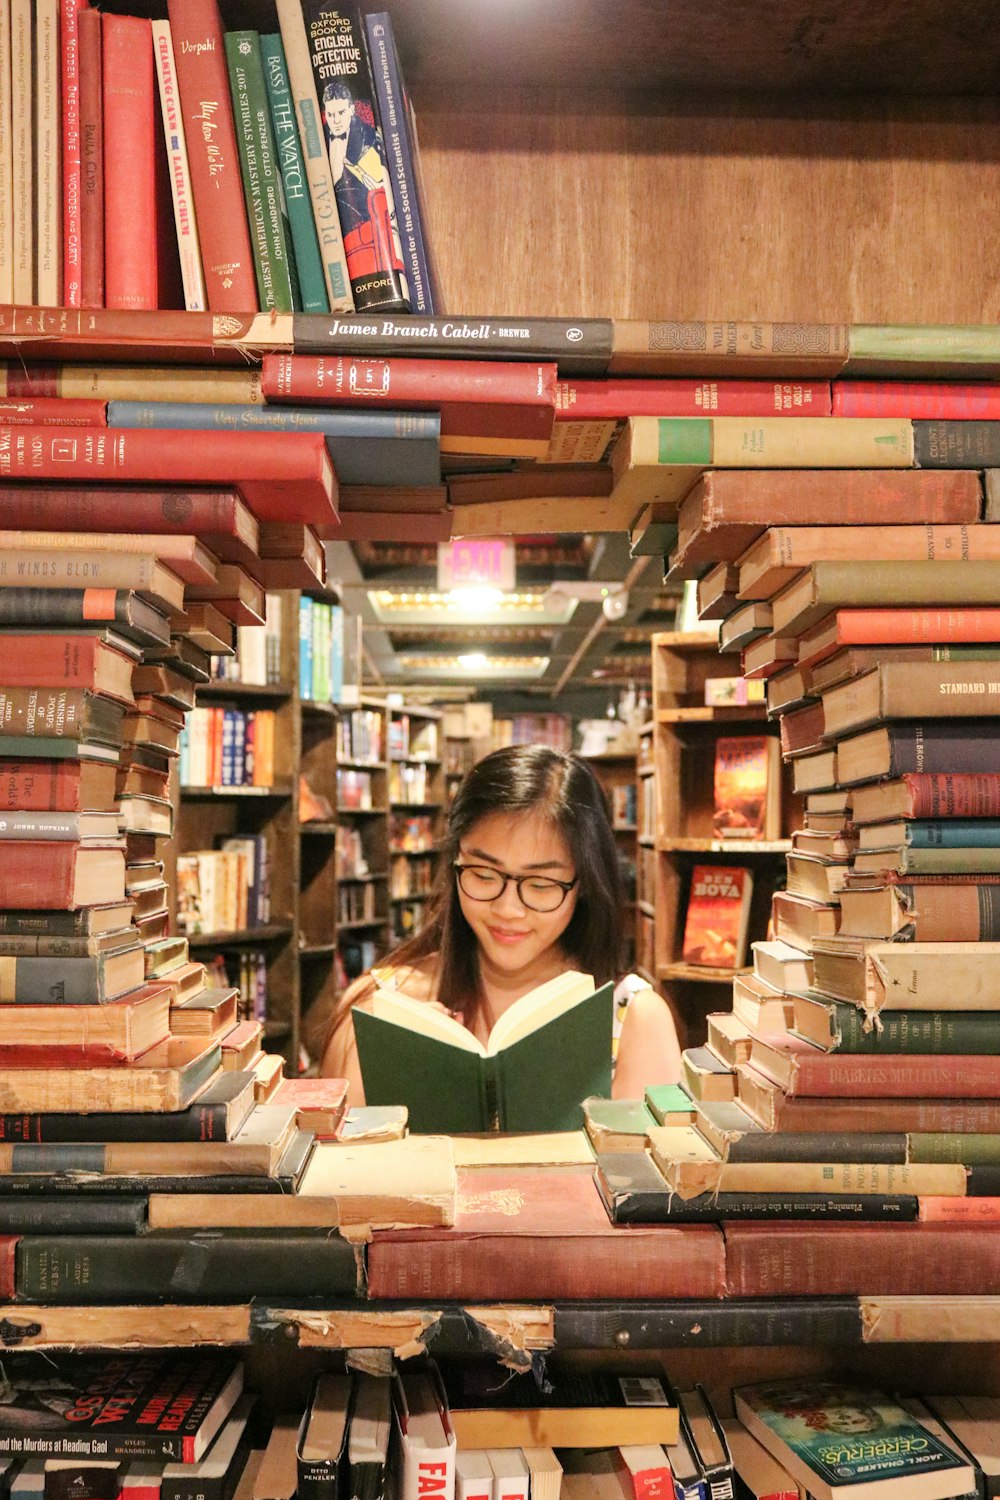 femme en chemise verte assise sur des livres